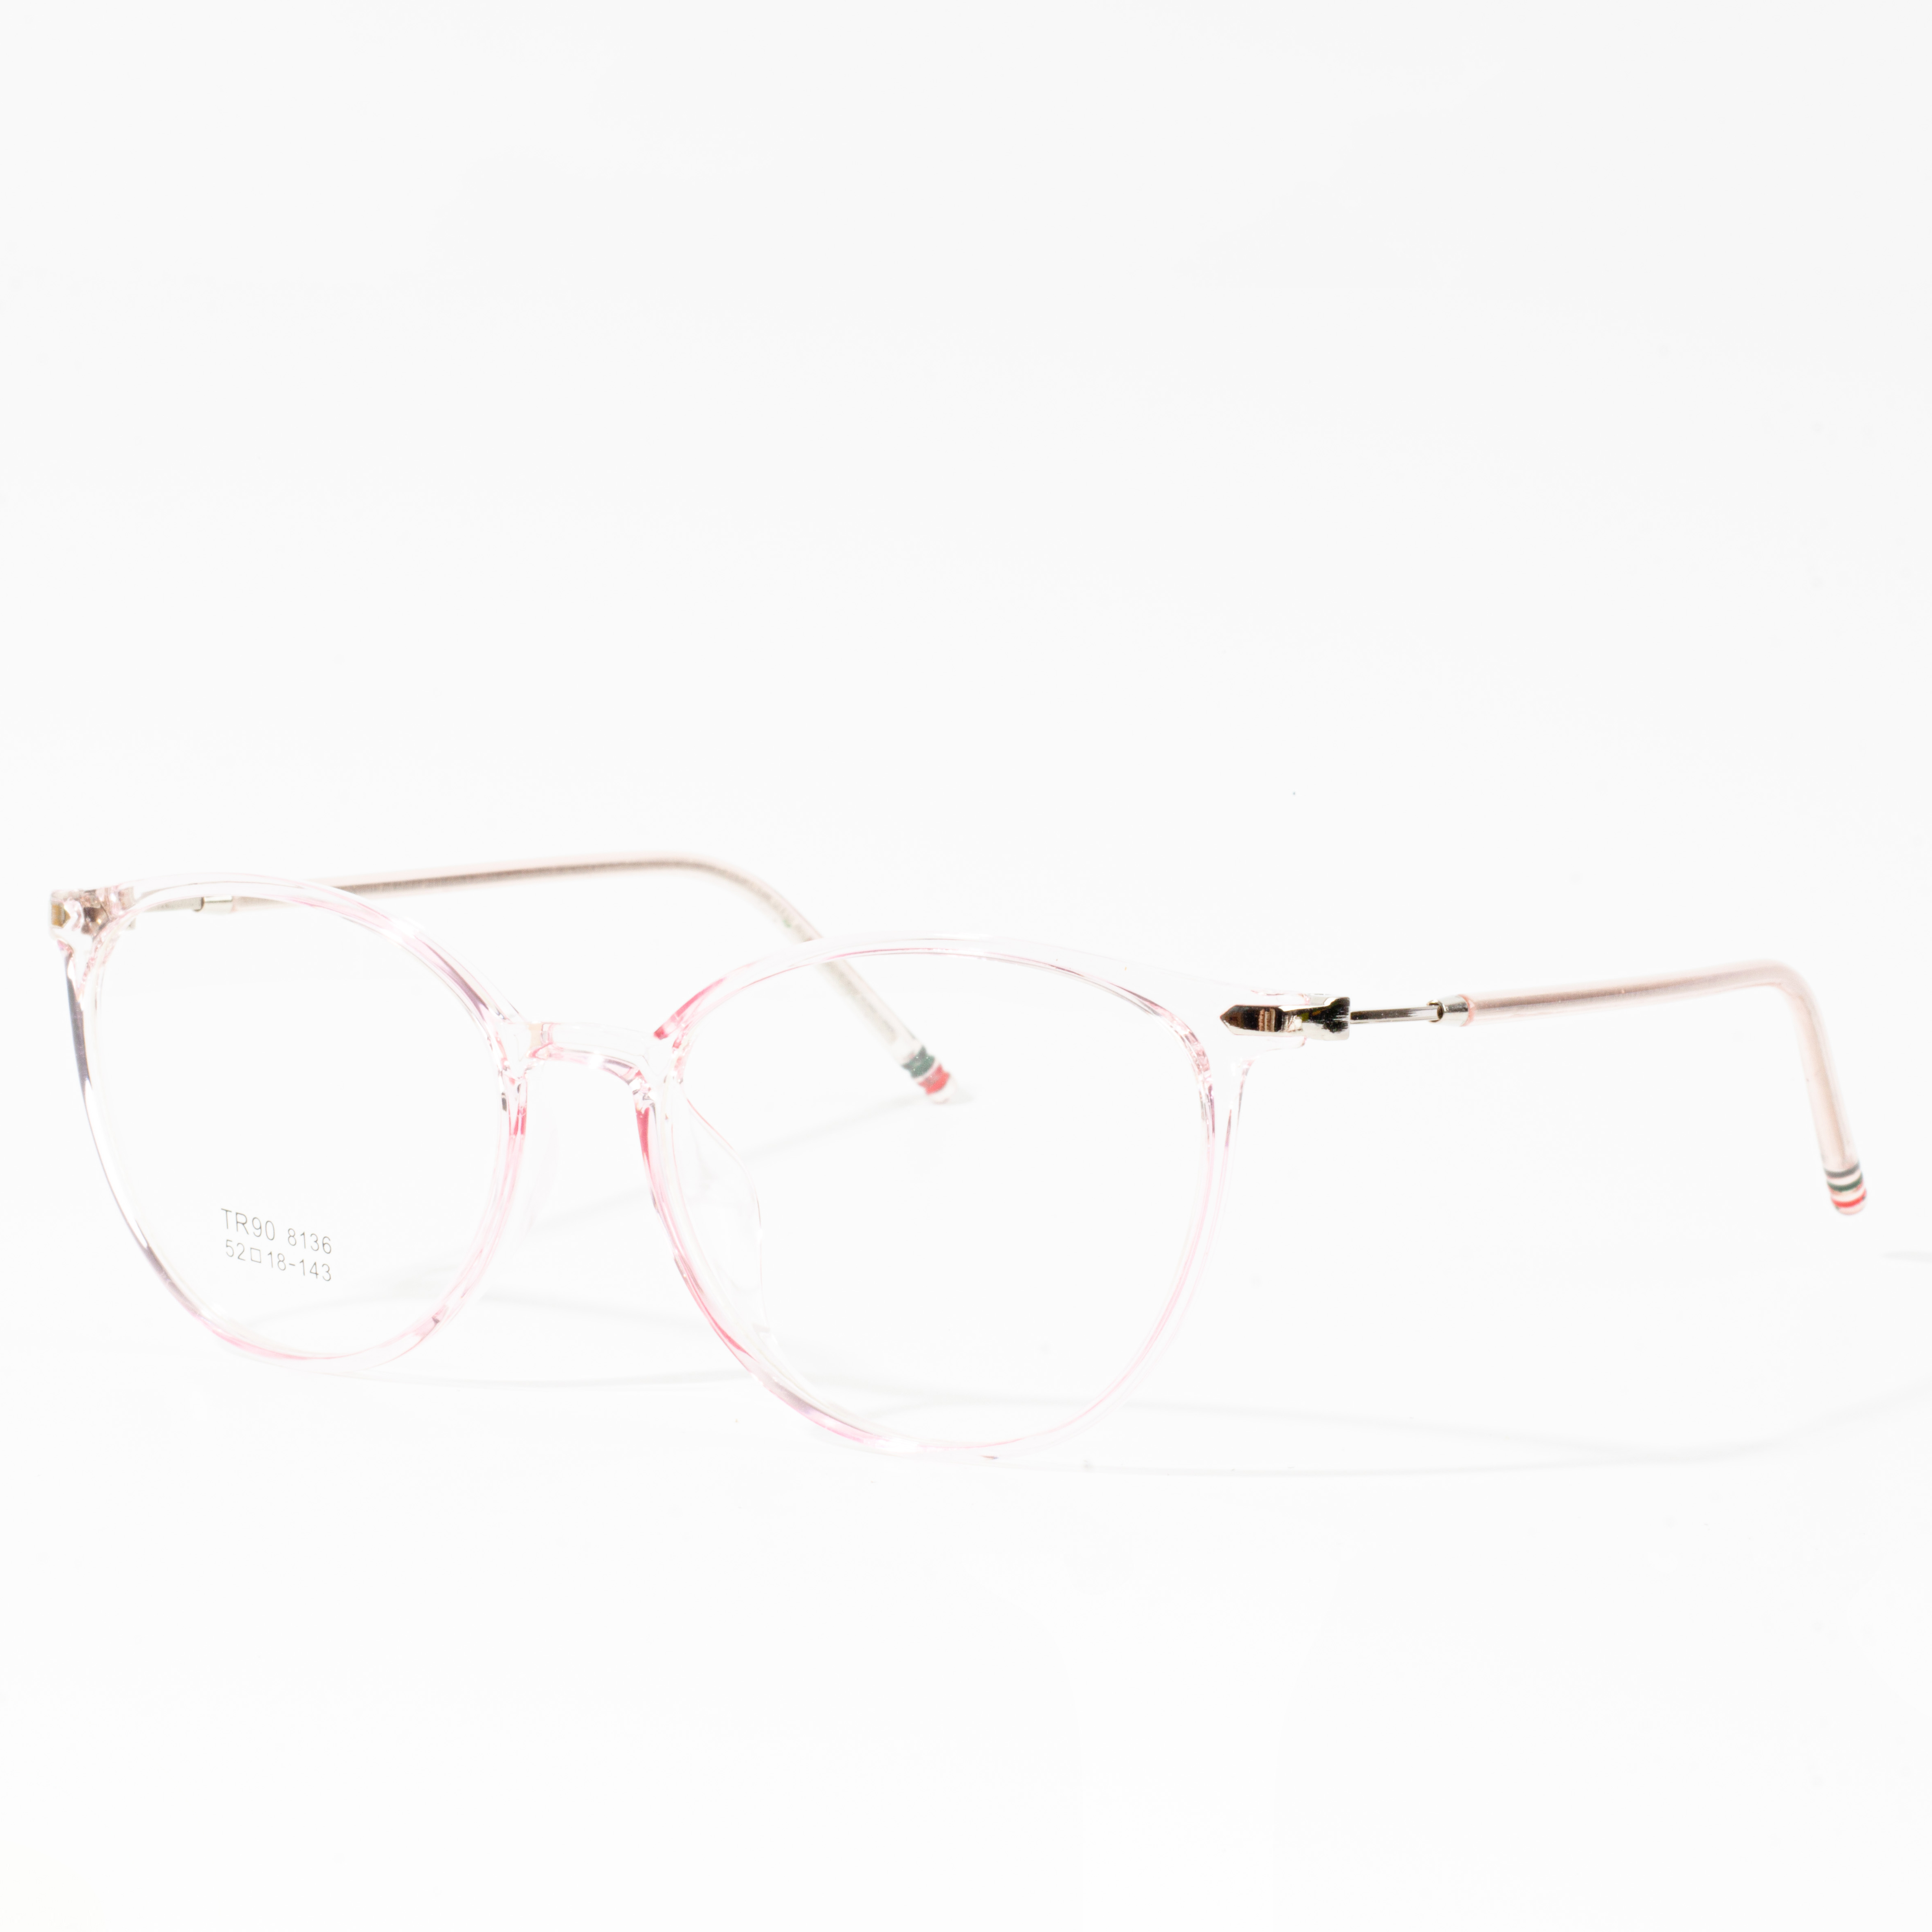 fleksibele brille frames